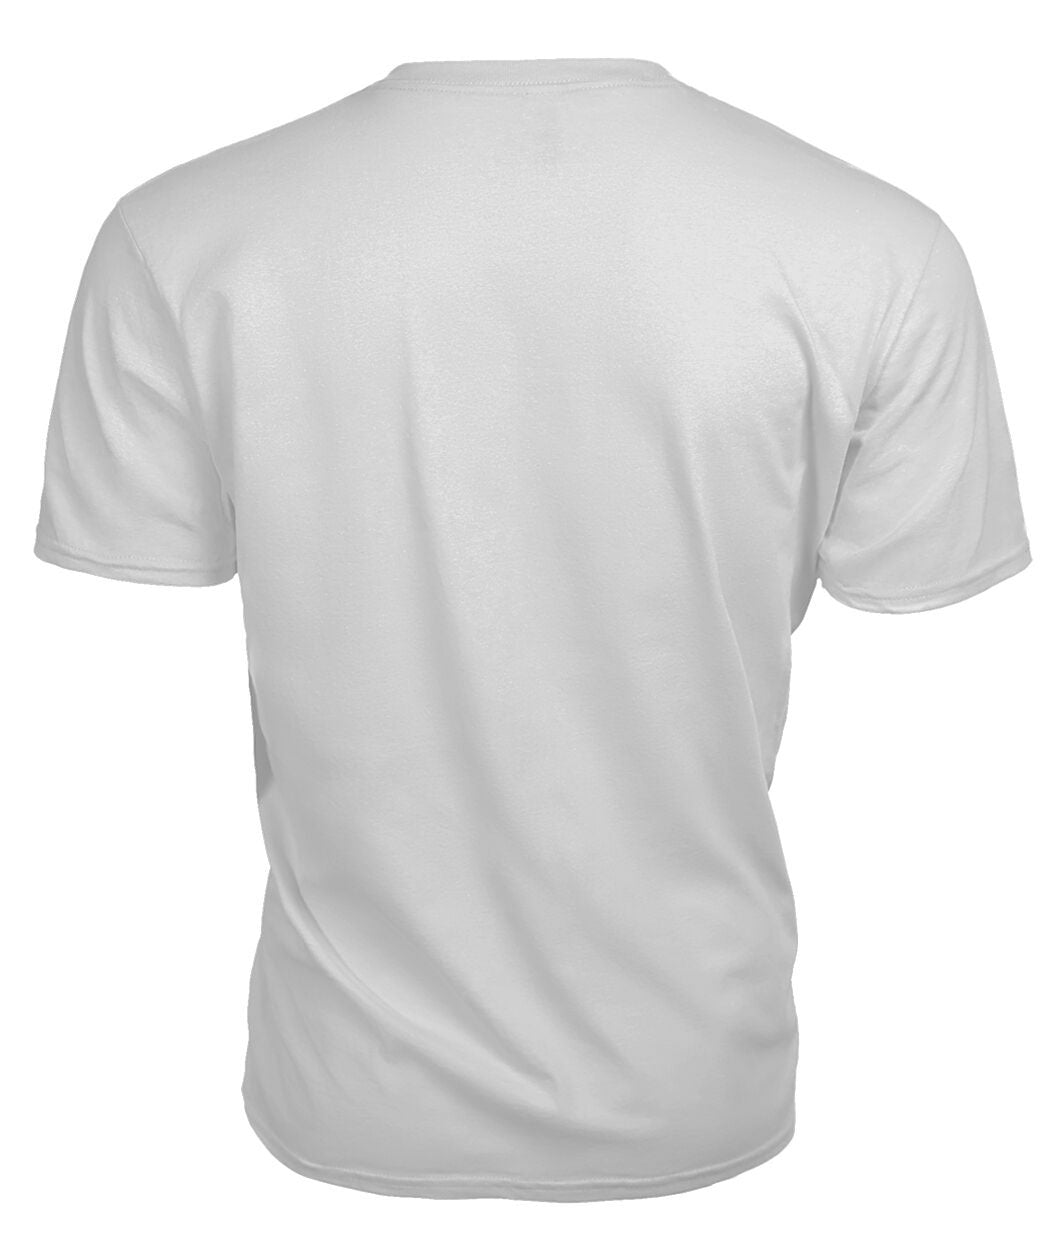 Newton Tartan Crest 2D T-shirt - Blood Runs Through My Veins Style